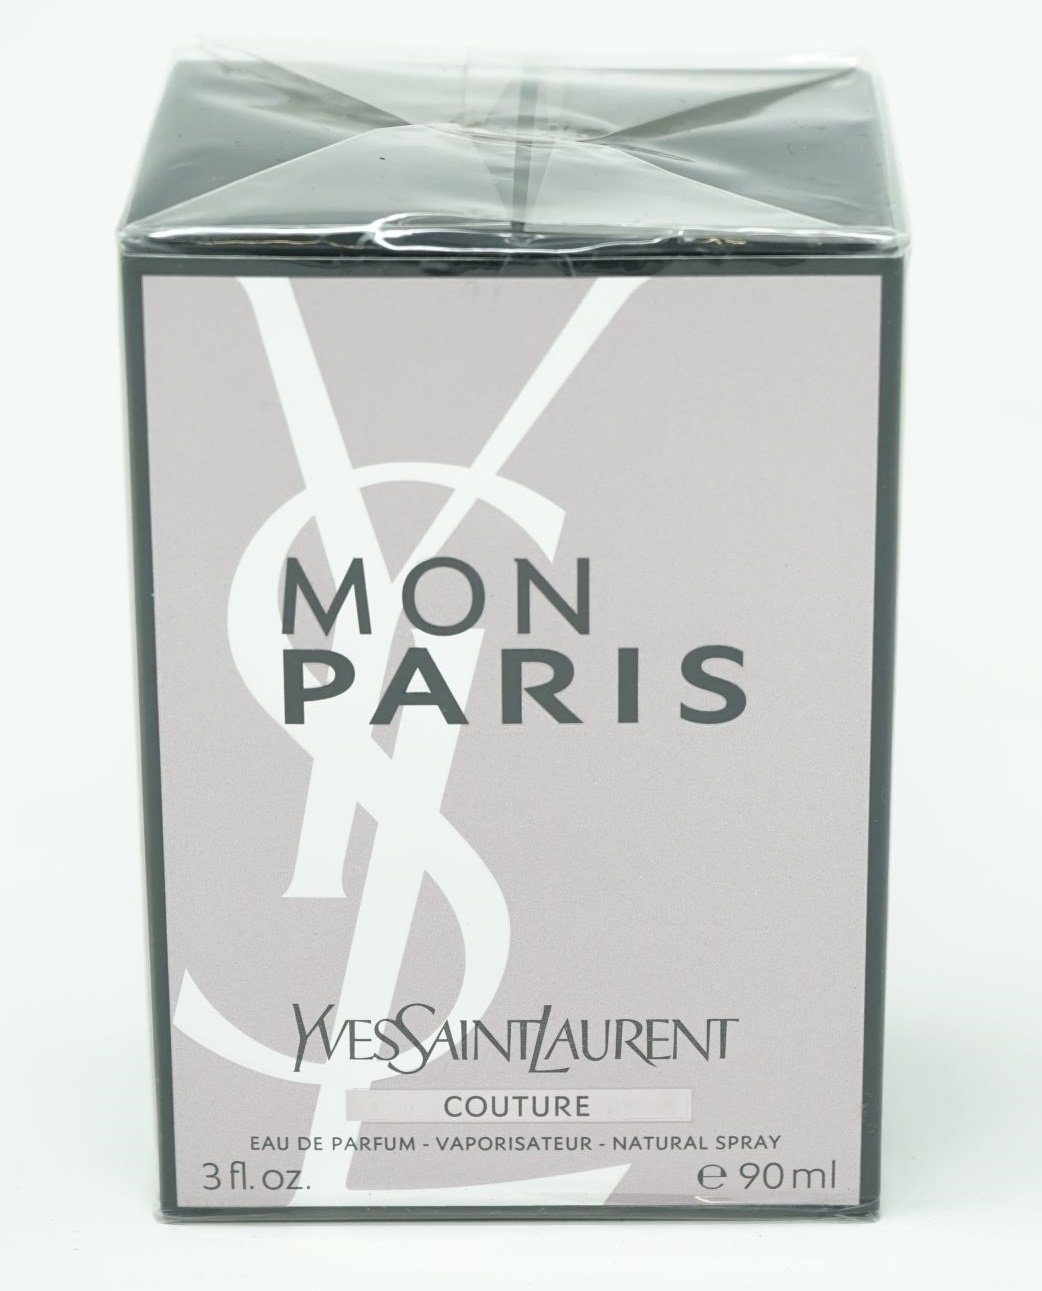 YVES SAINT LAURENT Eau de Parfum Yves Saint Laurent Mon Paris Couture Eau de Parfum Spray 90 ml